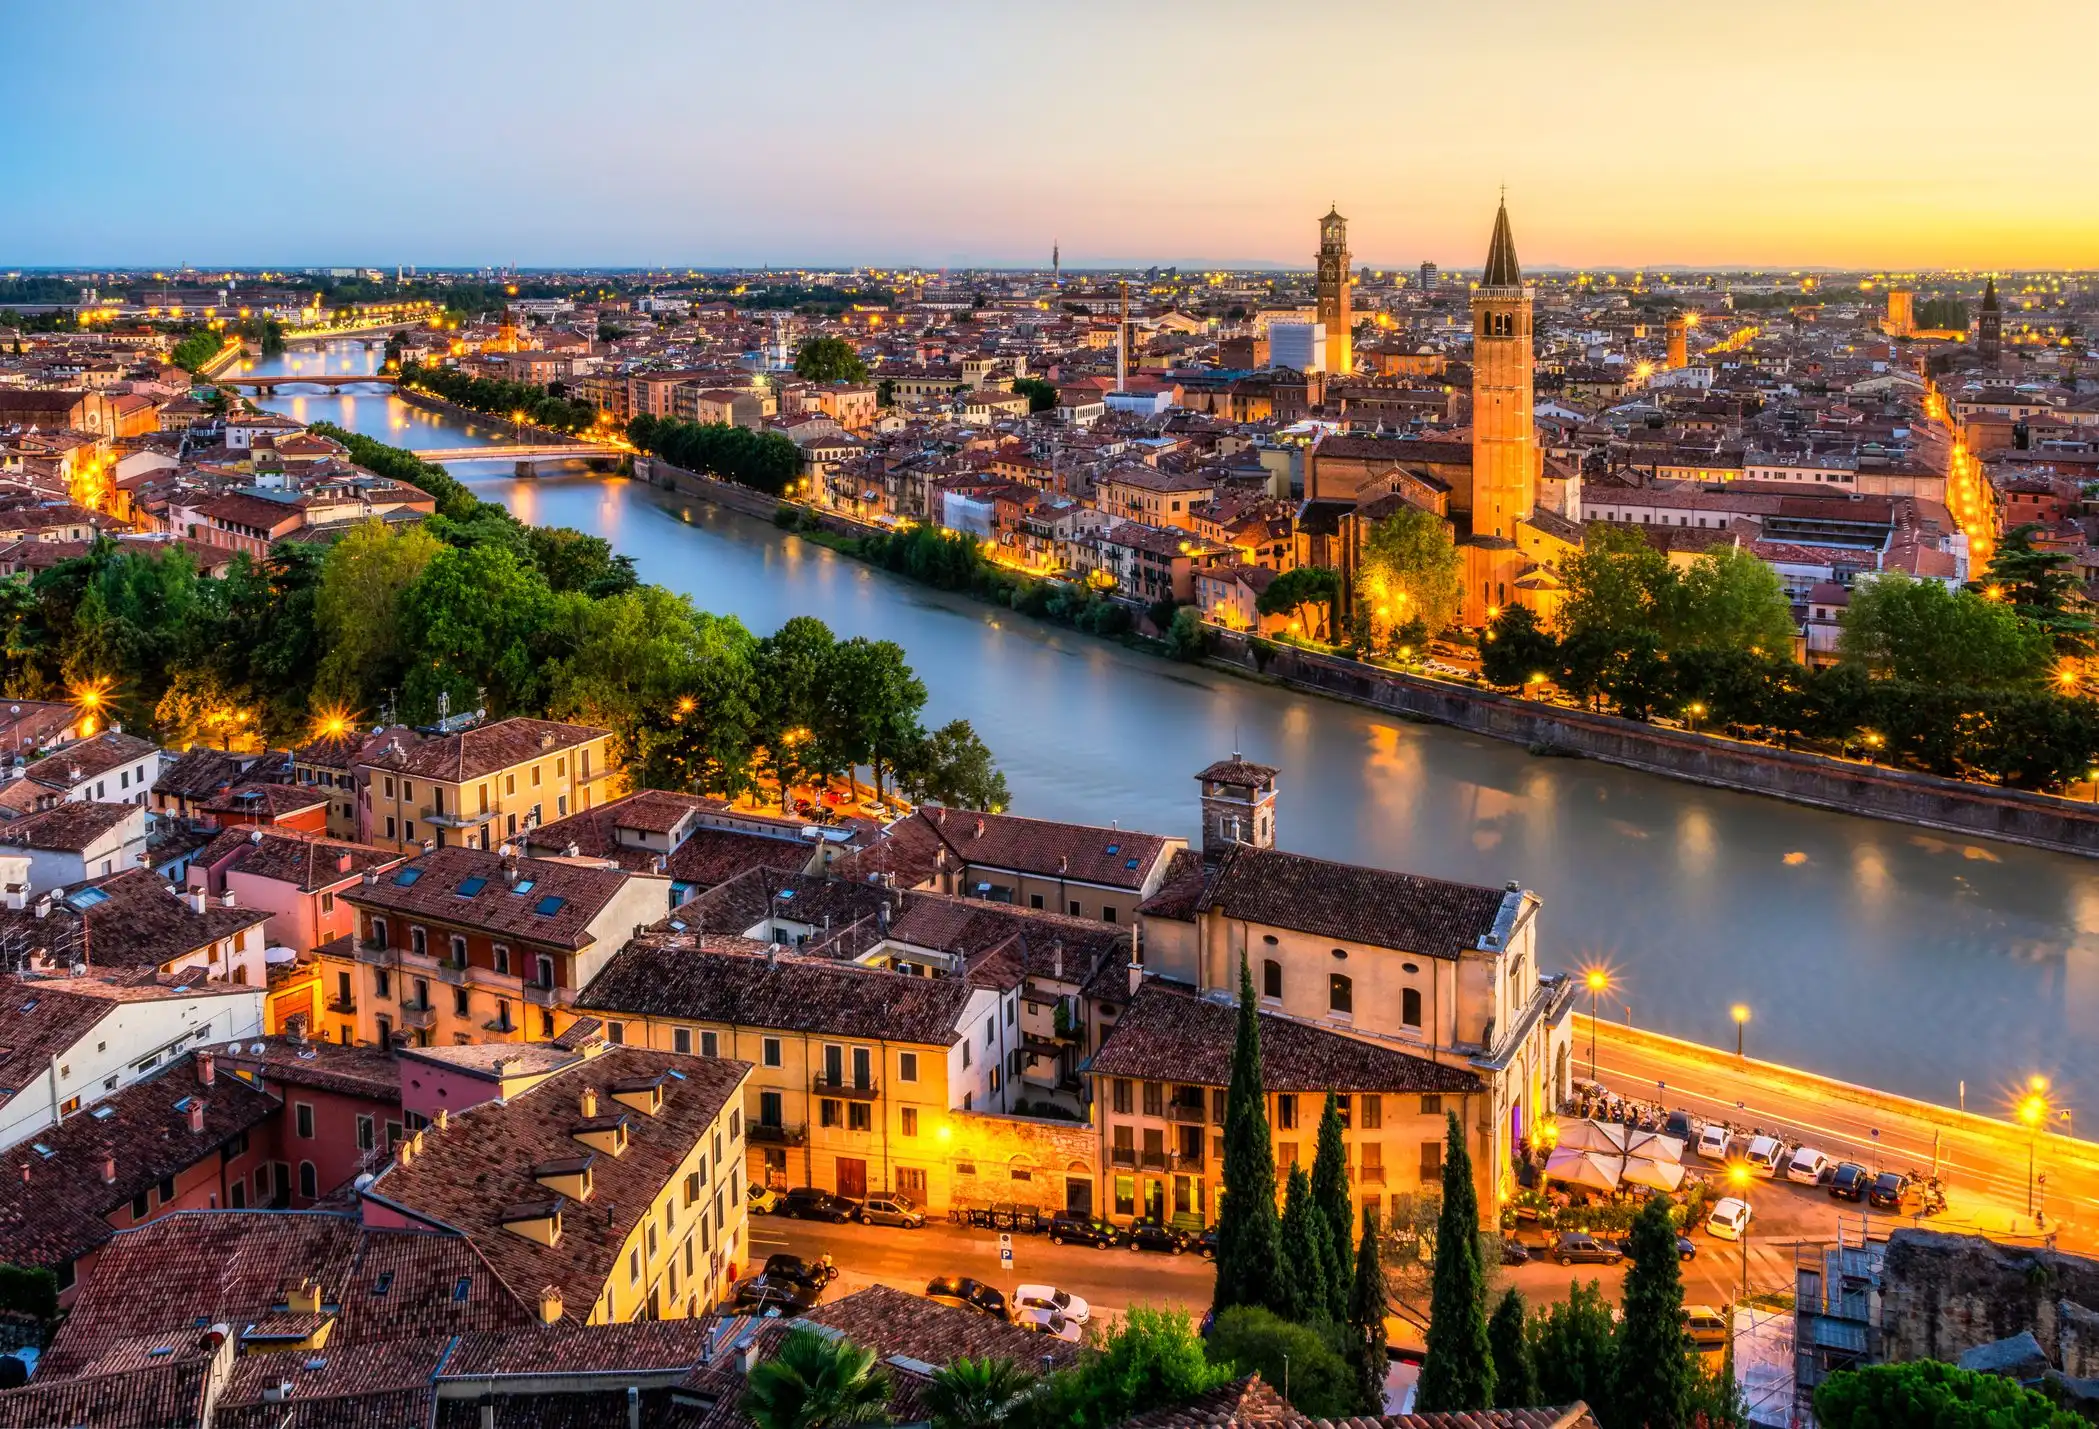 Verona tourism